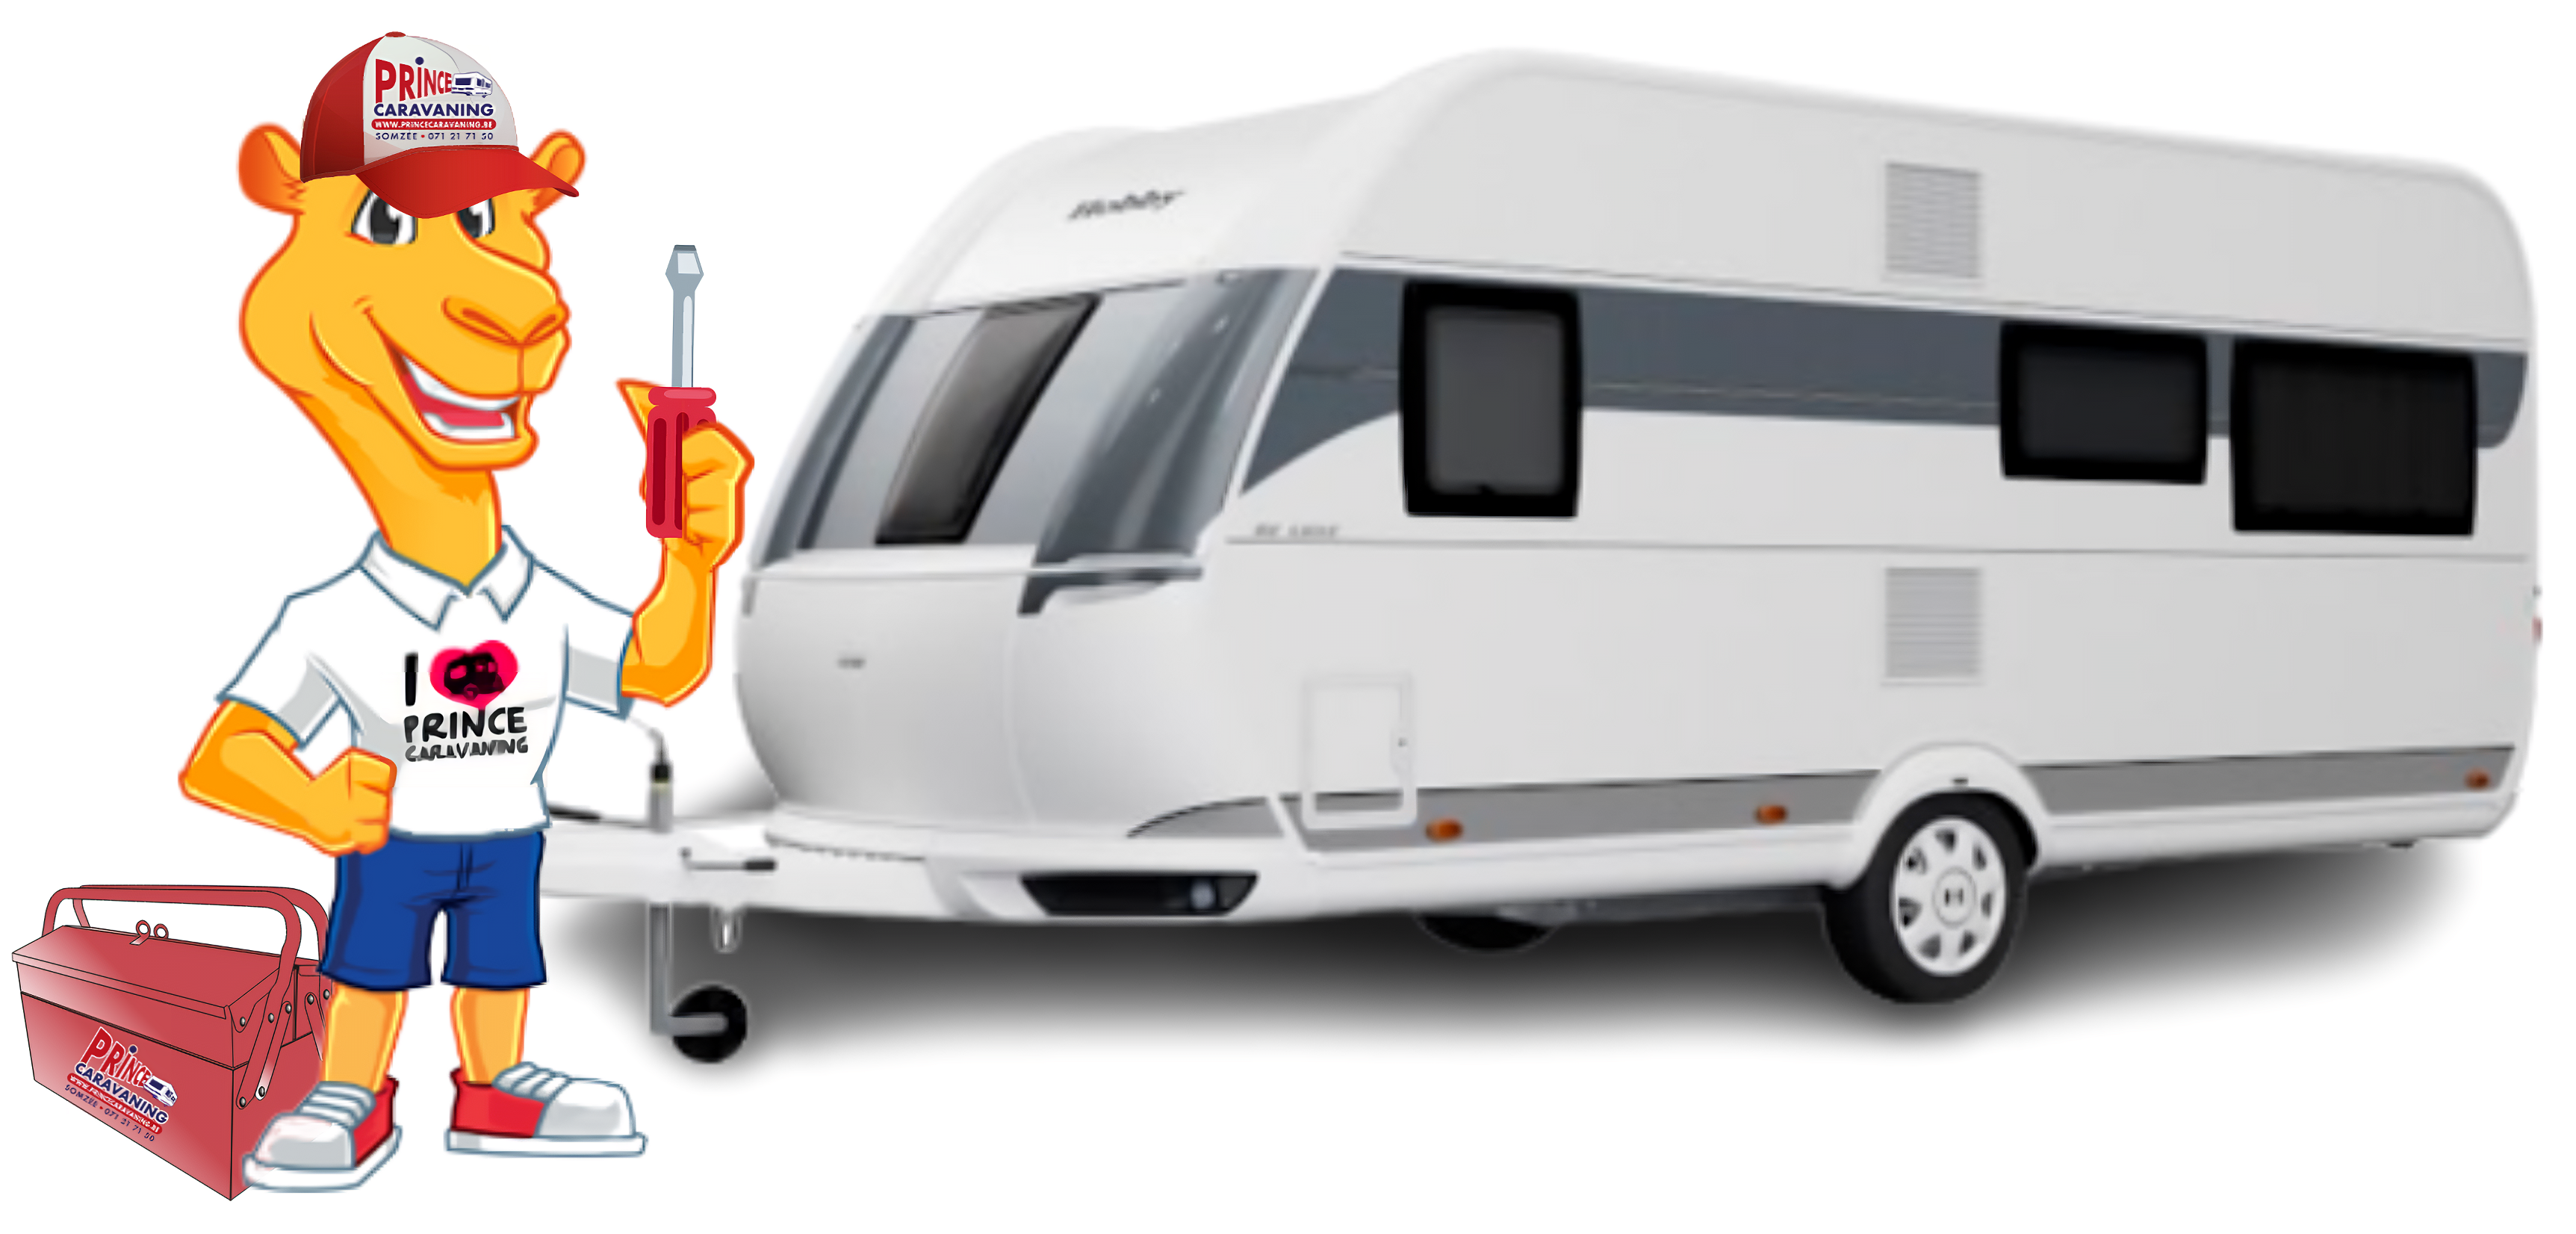 Panneaux solaires pour caravane  camping-car – Dethleffs base de